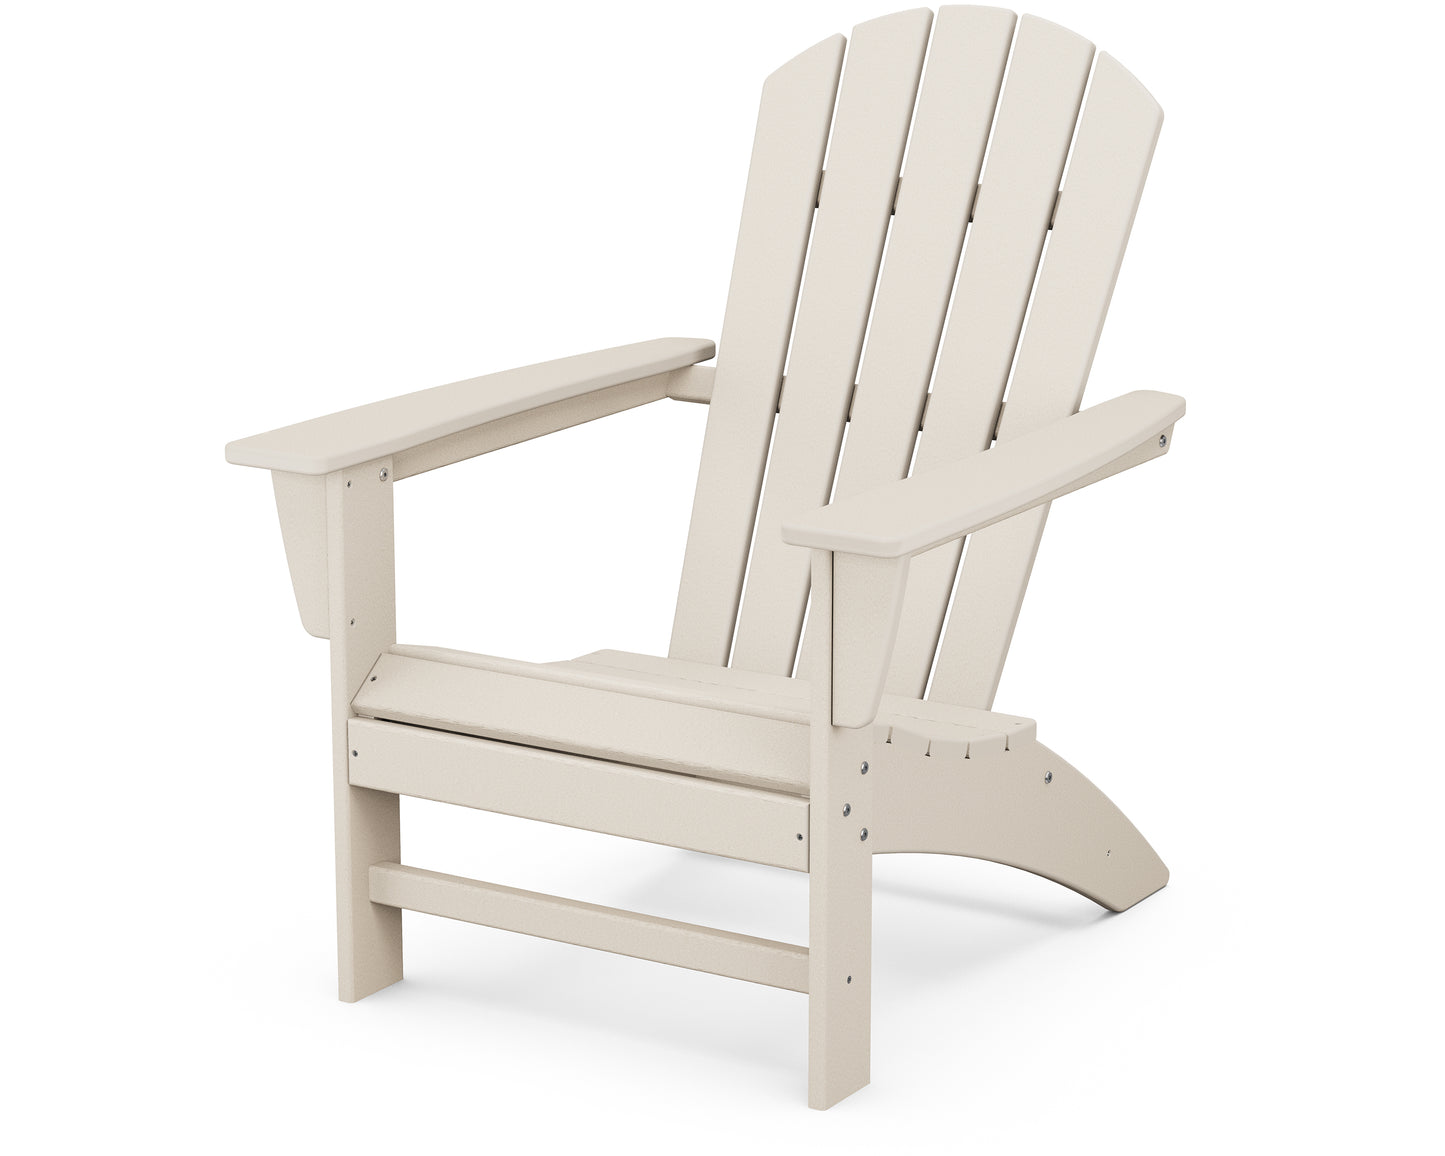 Nautical Adirondack Chair